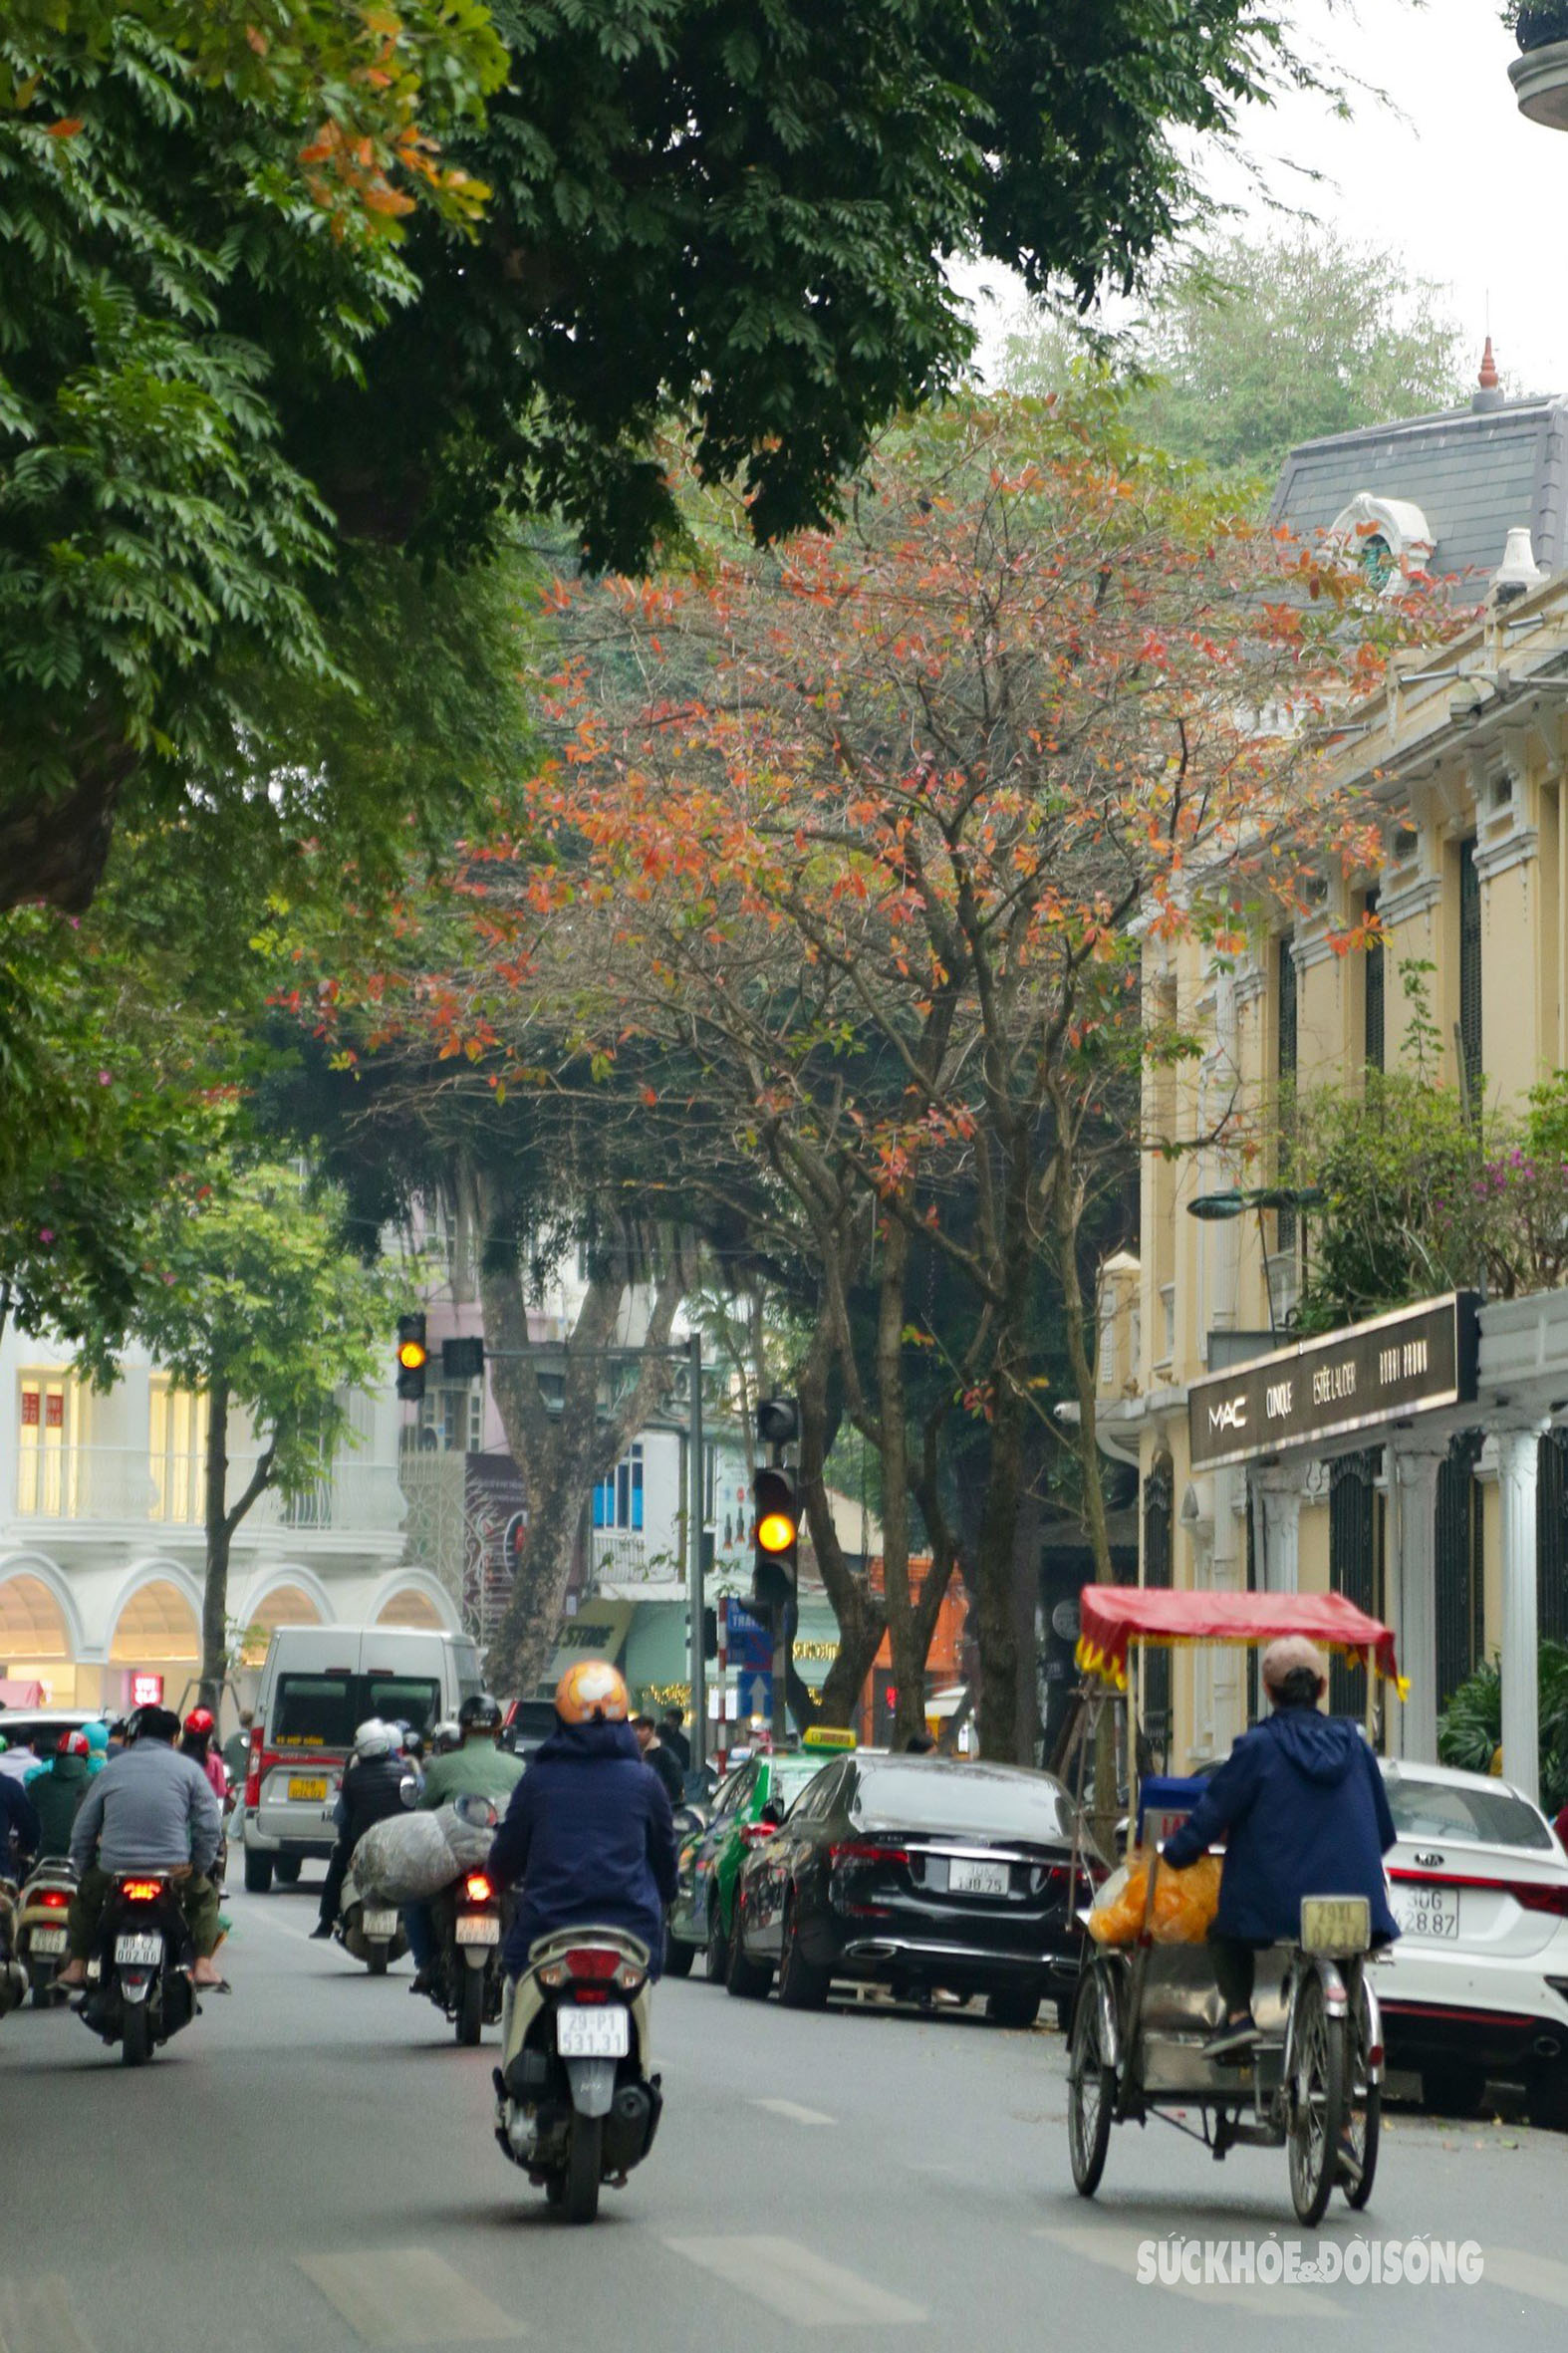 Khi tiết trời tháng 3 chuyển mình, cũng là lúc nhiều con phố tại Hà Nội lại bước vào mùa thay lá, trên những tán lá xen lẫn sắc vàng, đỏ, khiến cho khung cảnh trở nên lung linh đầy sắc màu. Người đi đường xuýt xoa, chiêm ngưỡng trước cảnh sắc lãng mạn ấy.